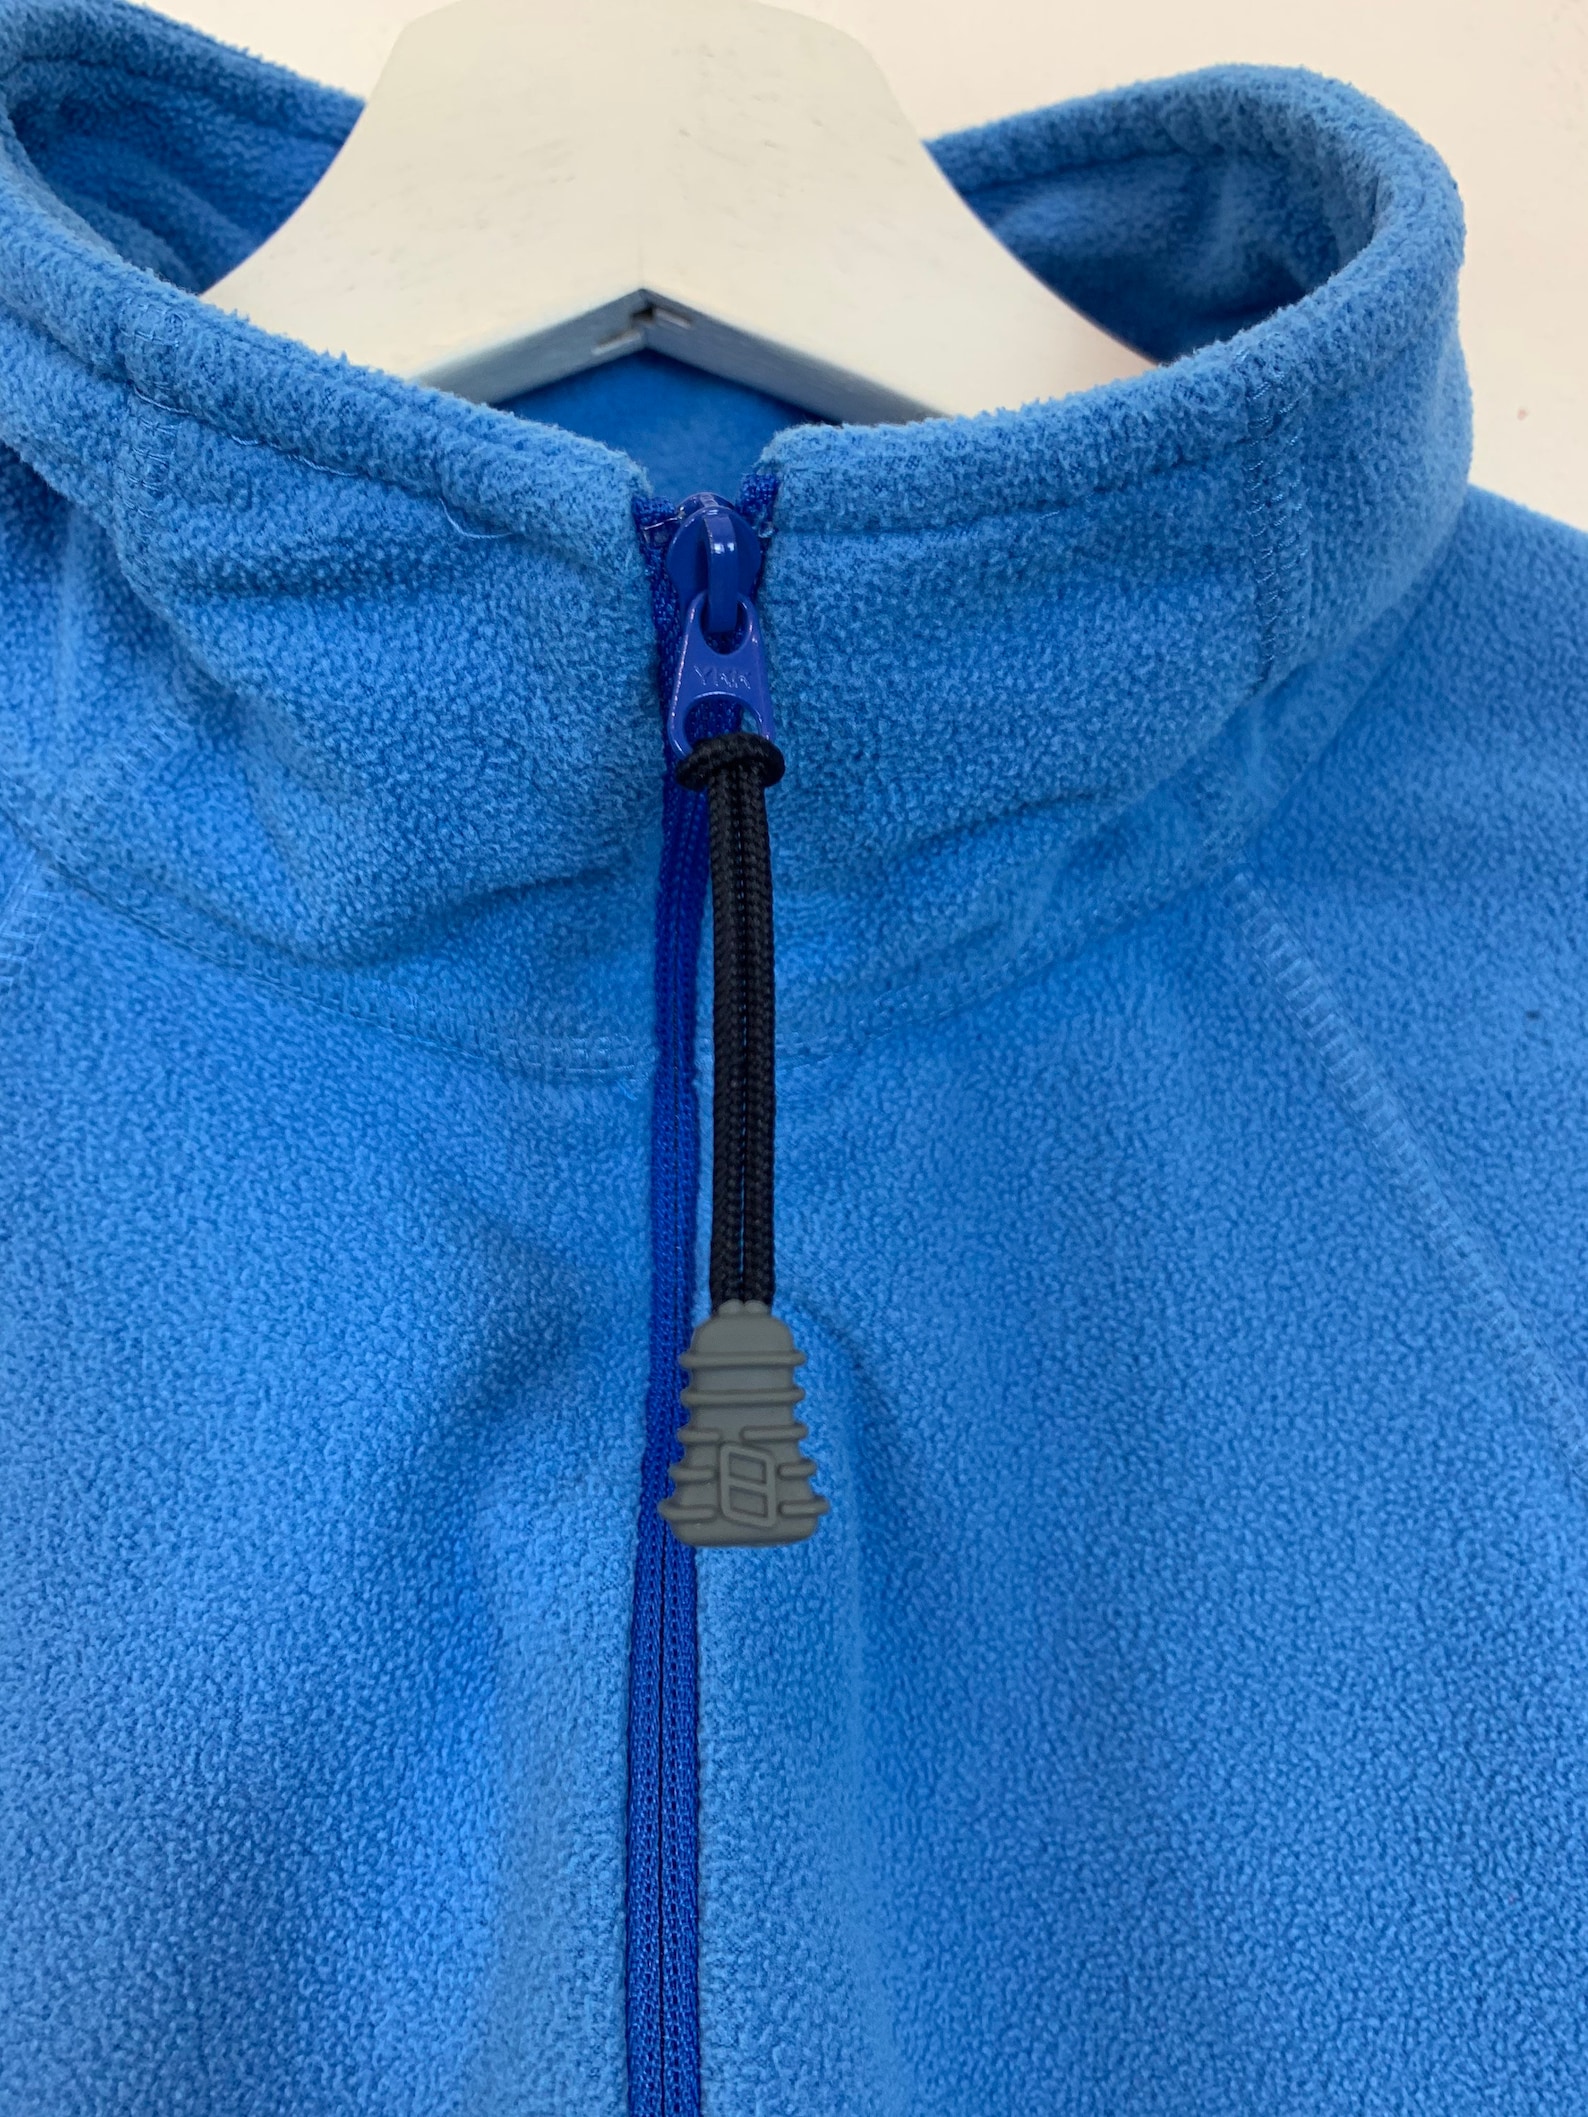 Women's Berghaus 1/4 Zip Fleece Sweatshirt Pullover Top | Etsy